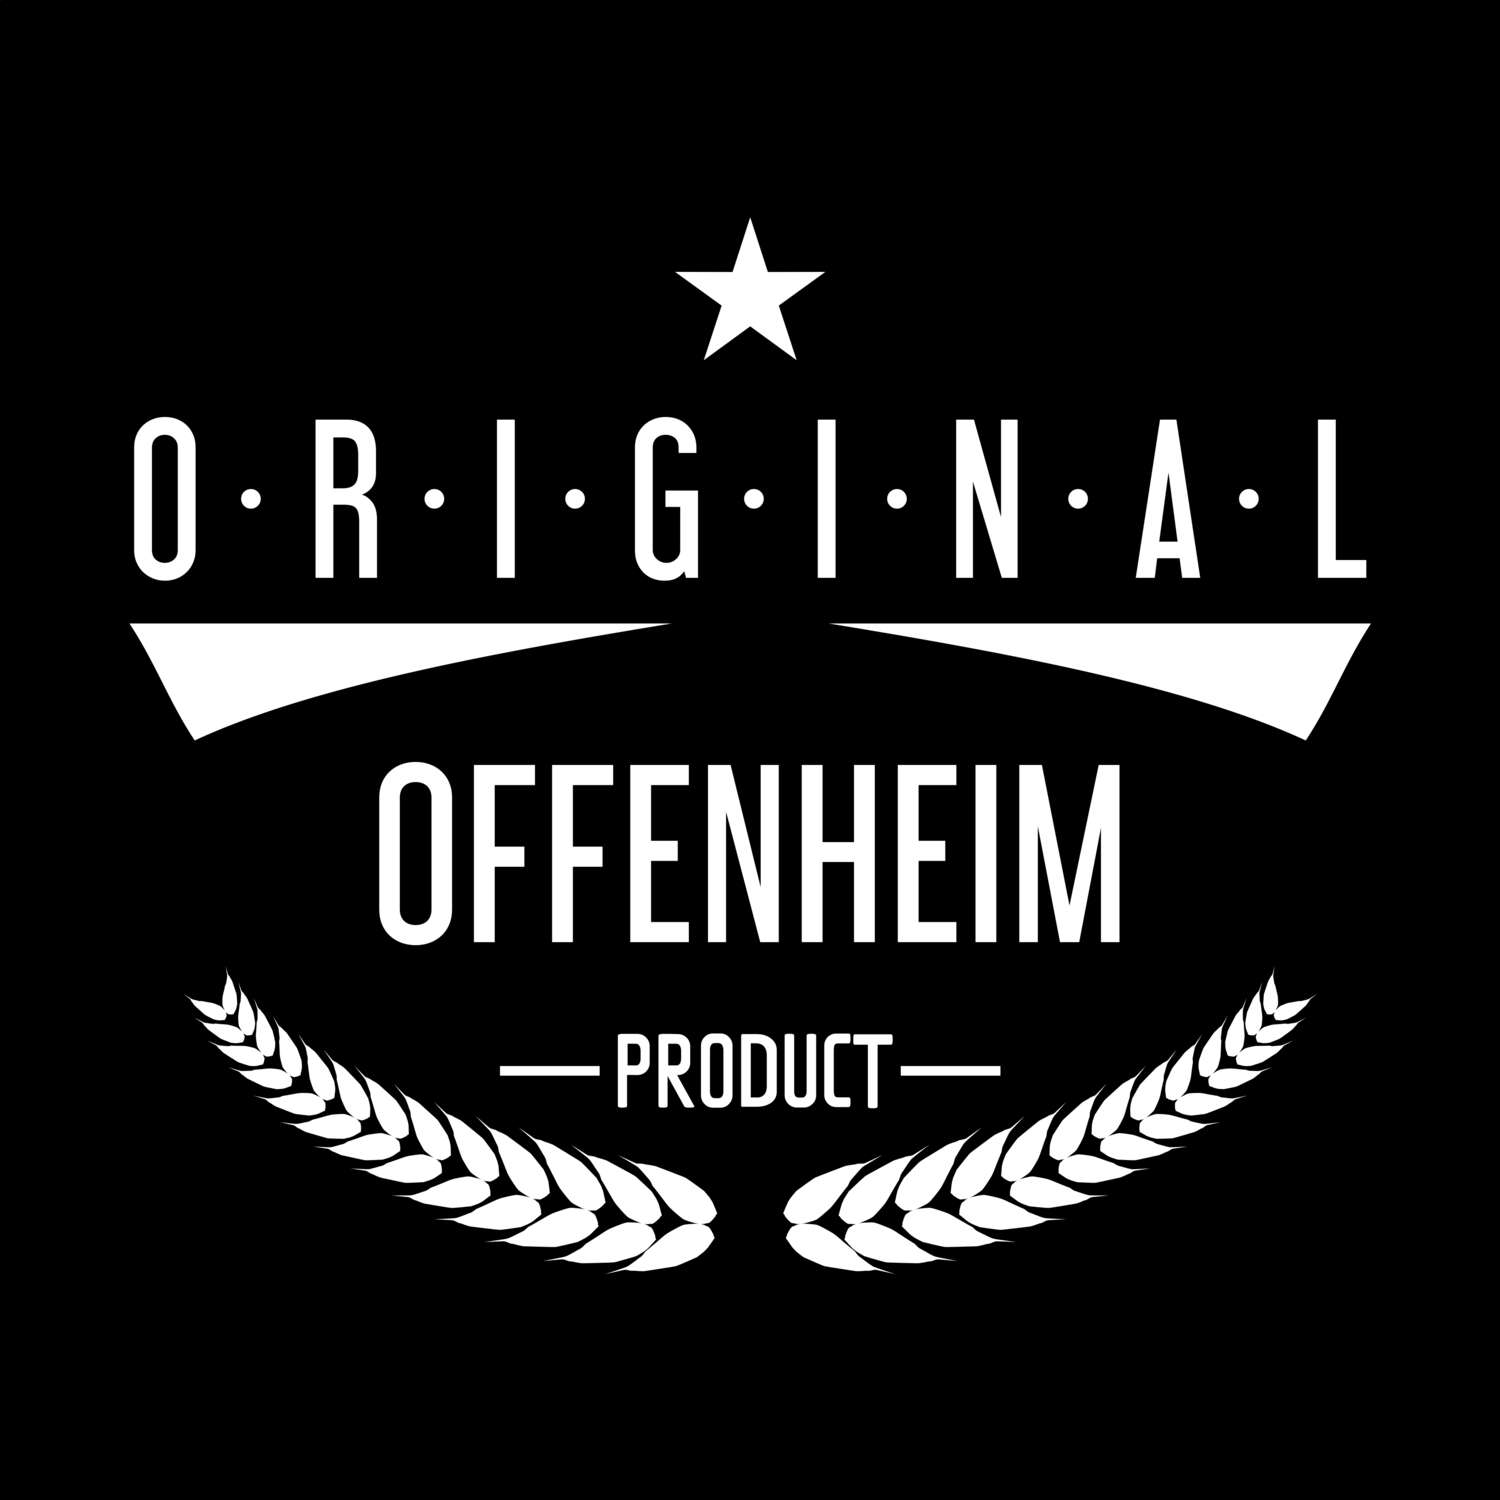 Offenheim T-Shirt »Original Product«